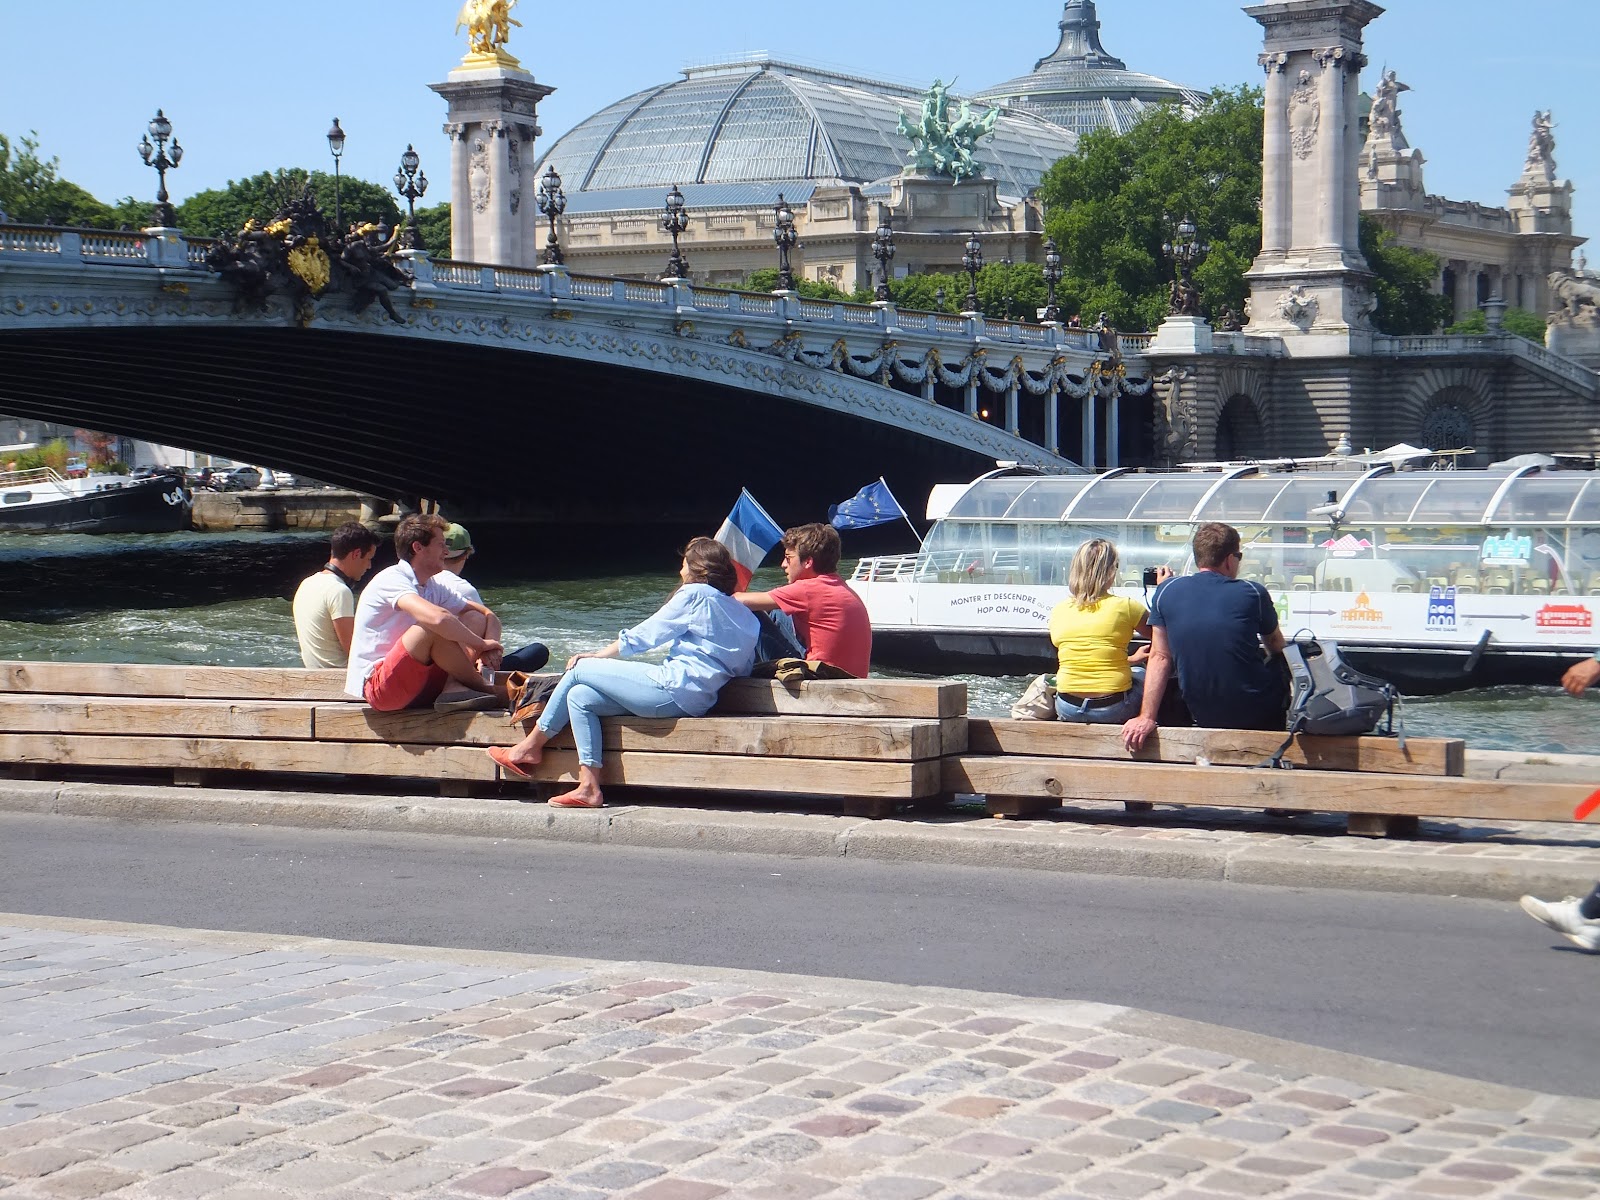 Berges de la Seine, Sena, París, Elisa N, Blog de Viajes, Lifestyle, Travel